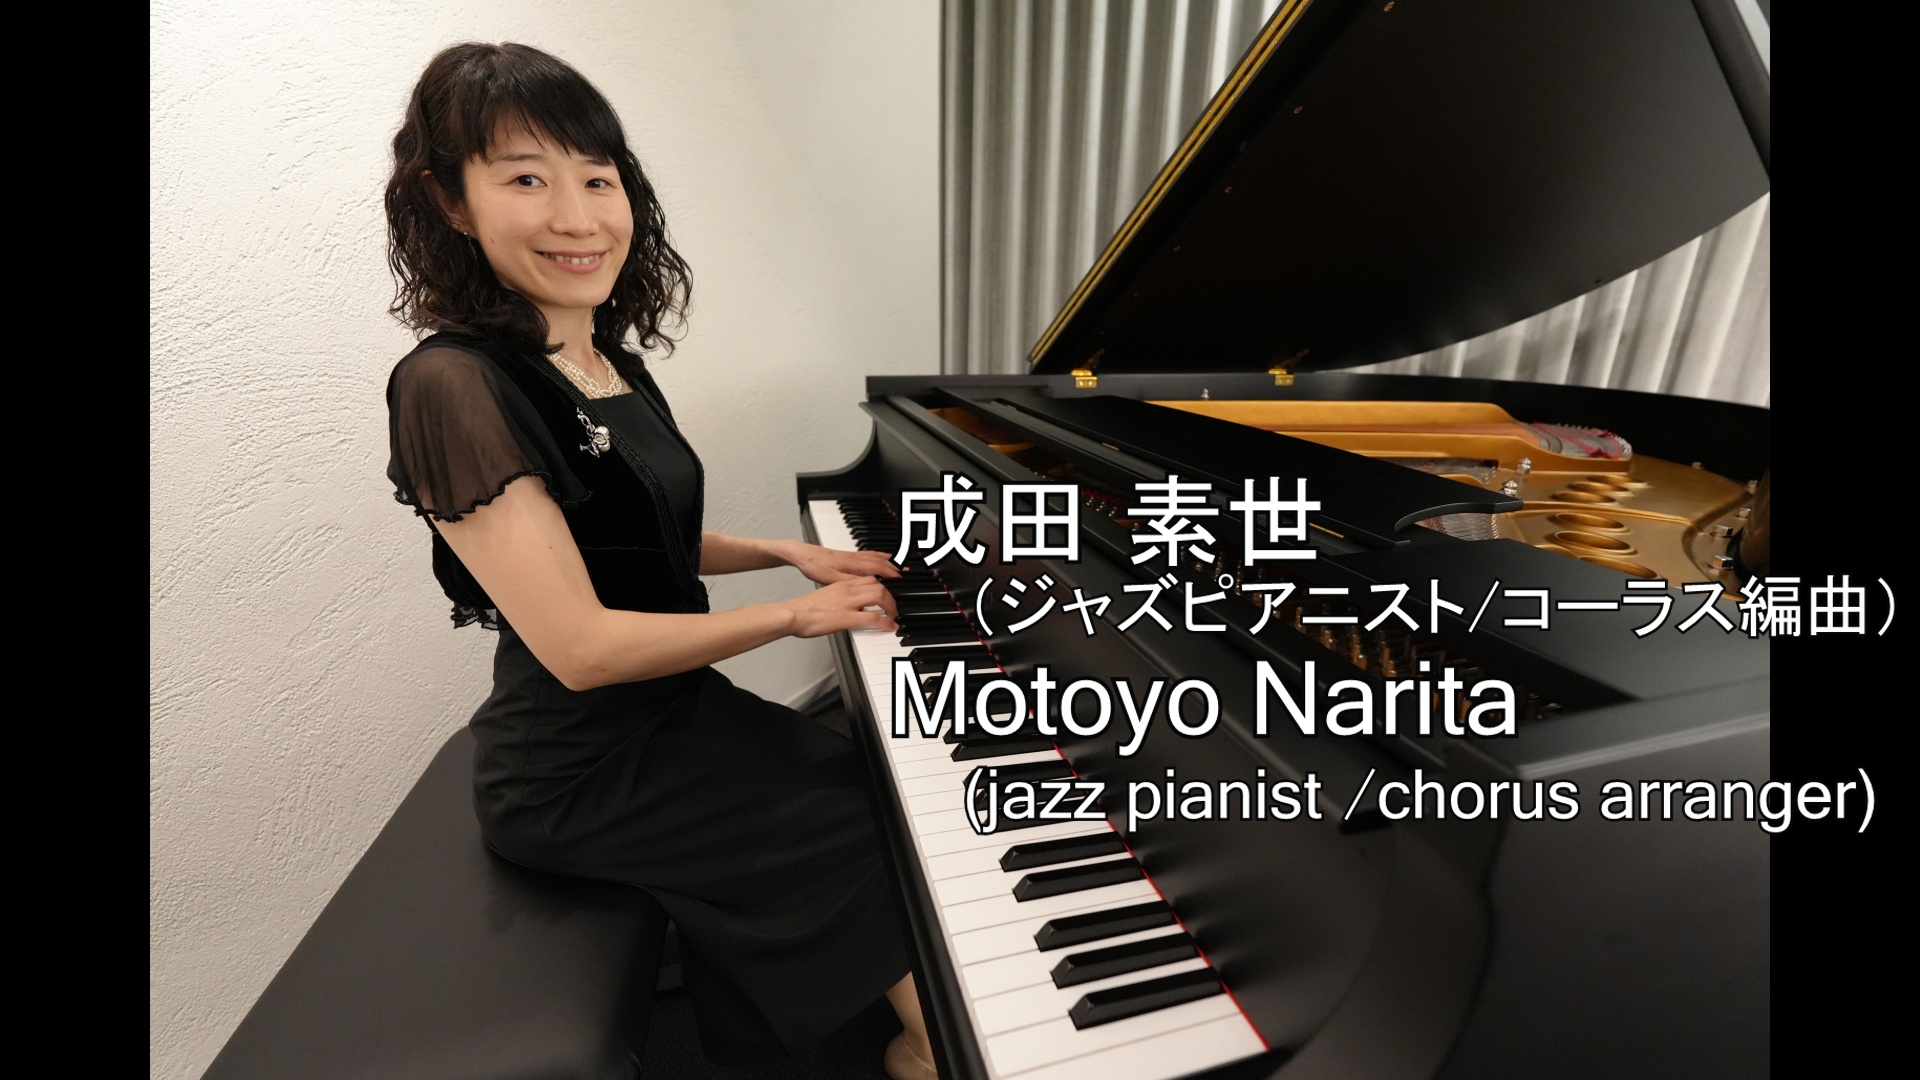 ブログ個人トップ ジャズピアニスト成田素世のホームページ